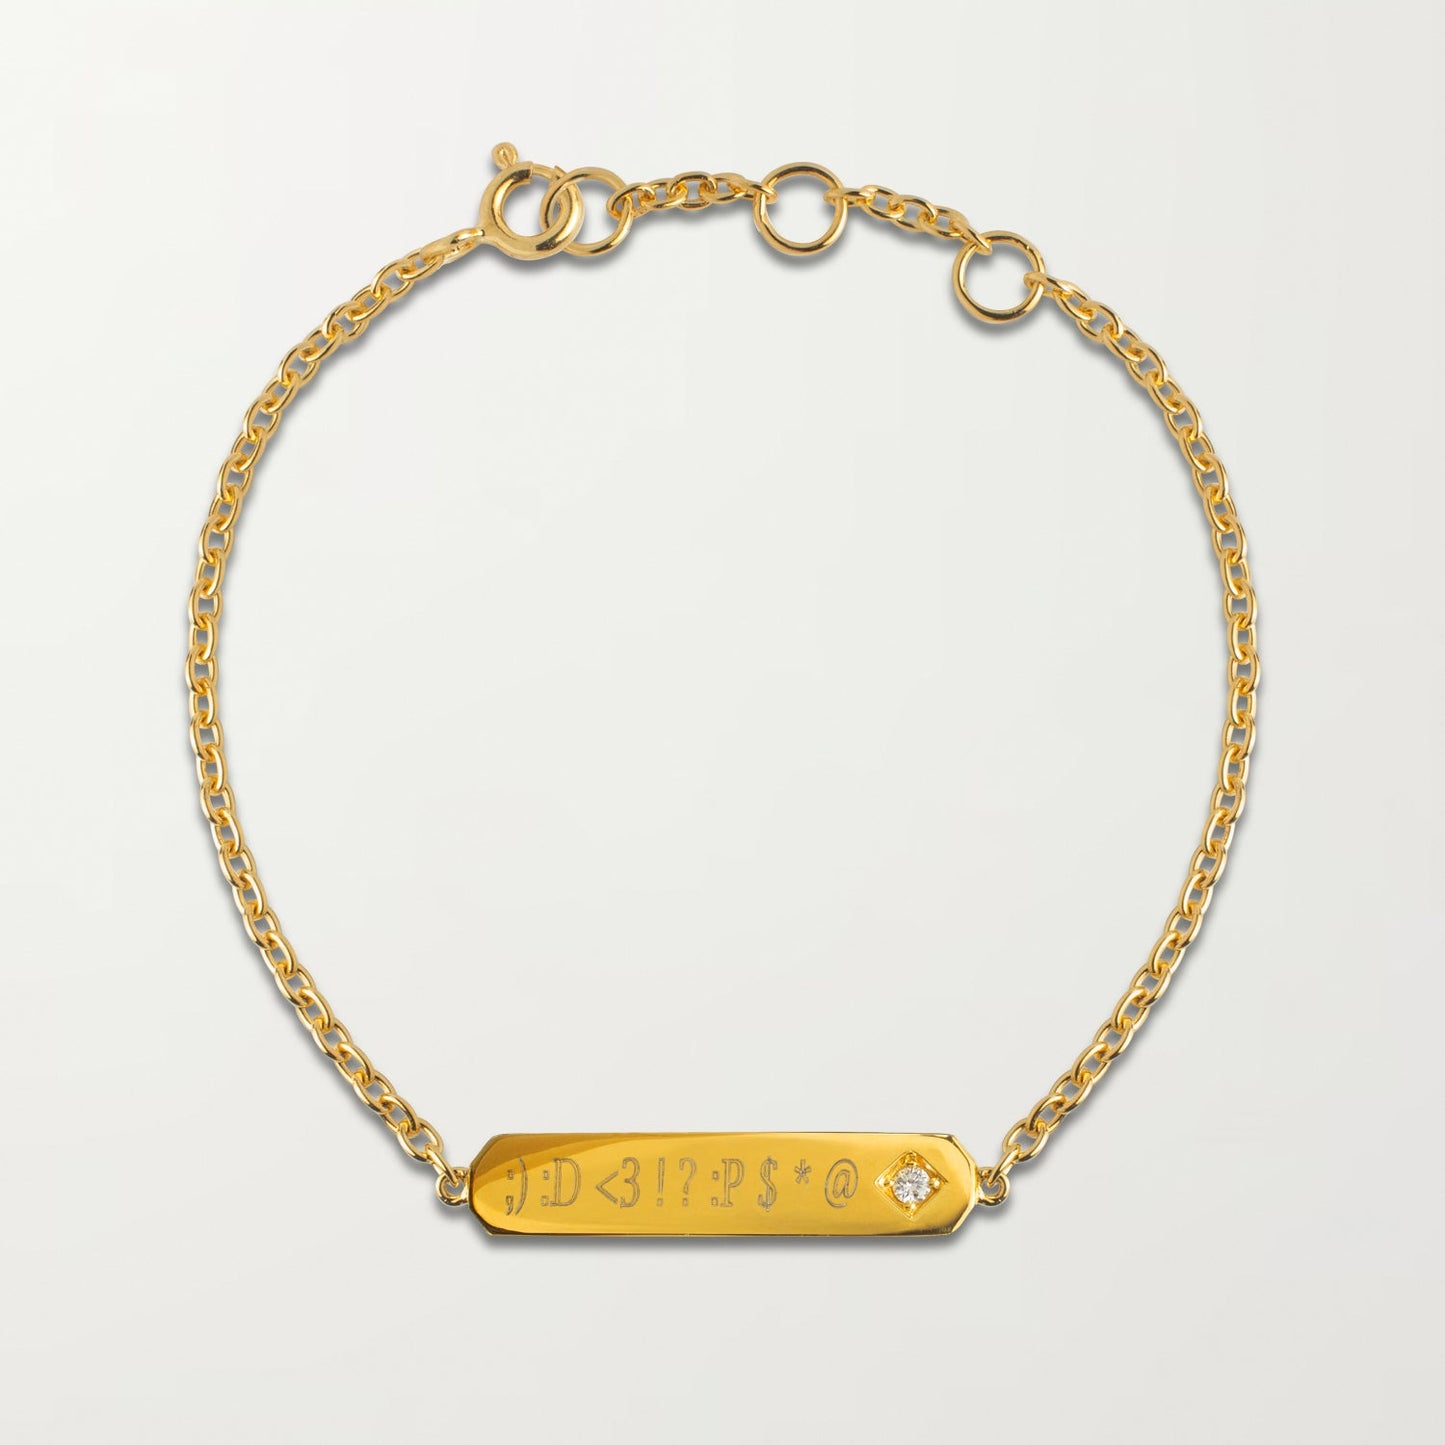 The Custom Nameplate Bracelet